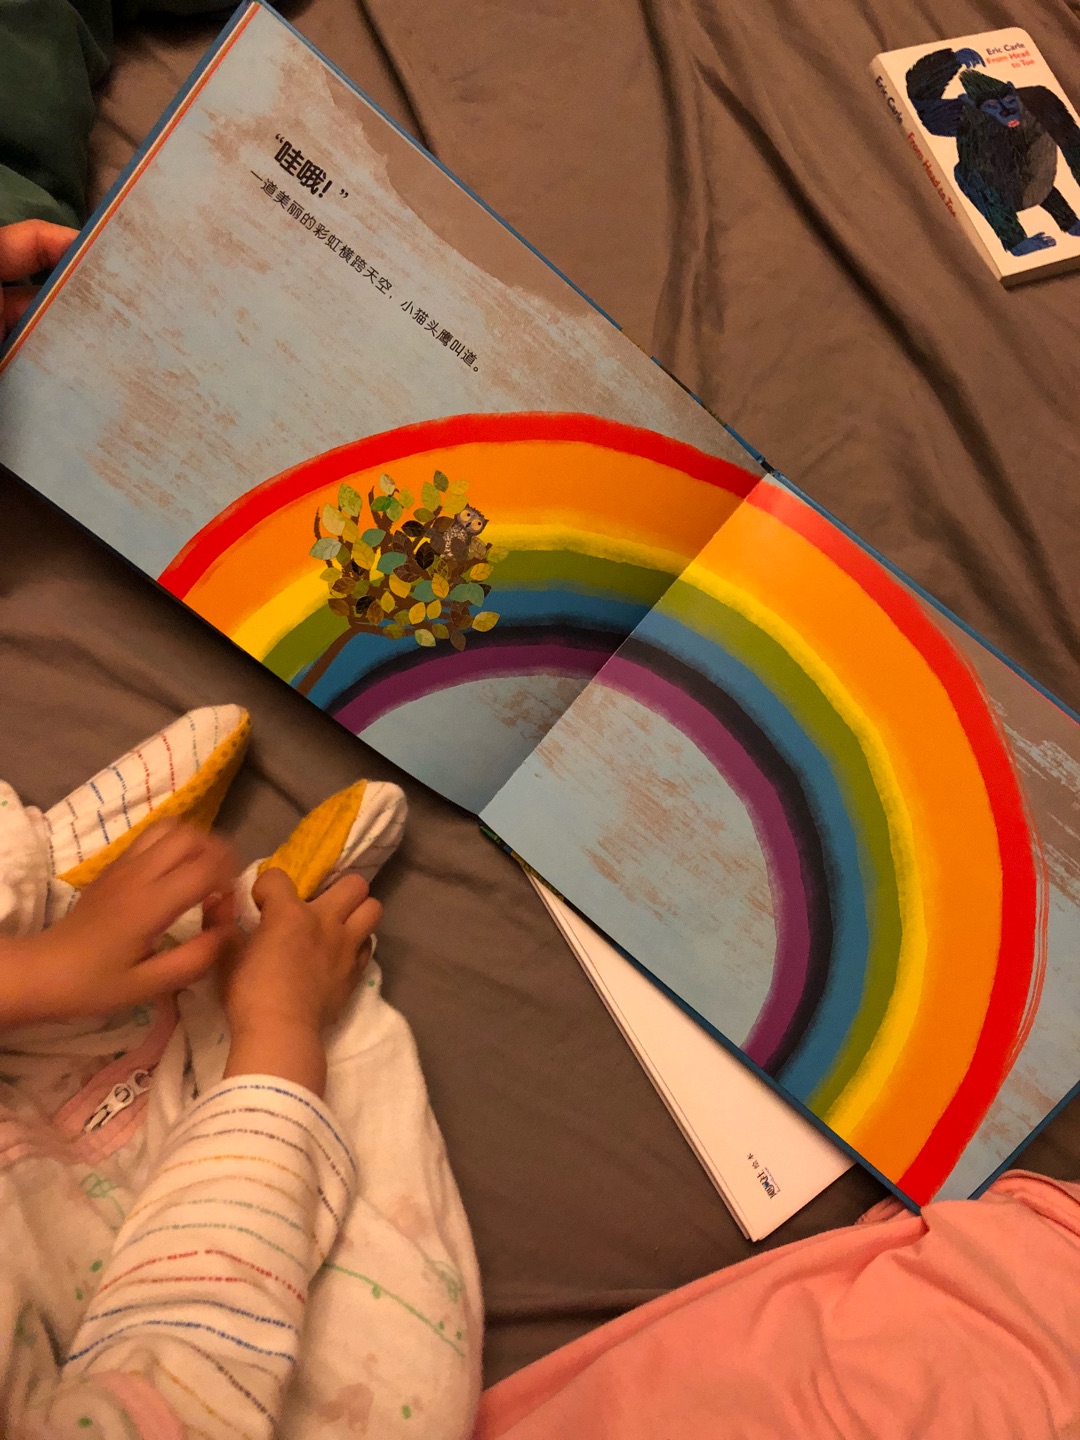 很有趣的一本书，最近宝宝在学颜色认知，很有帮助。